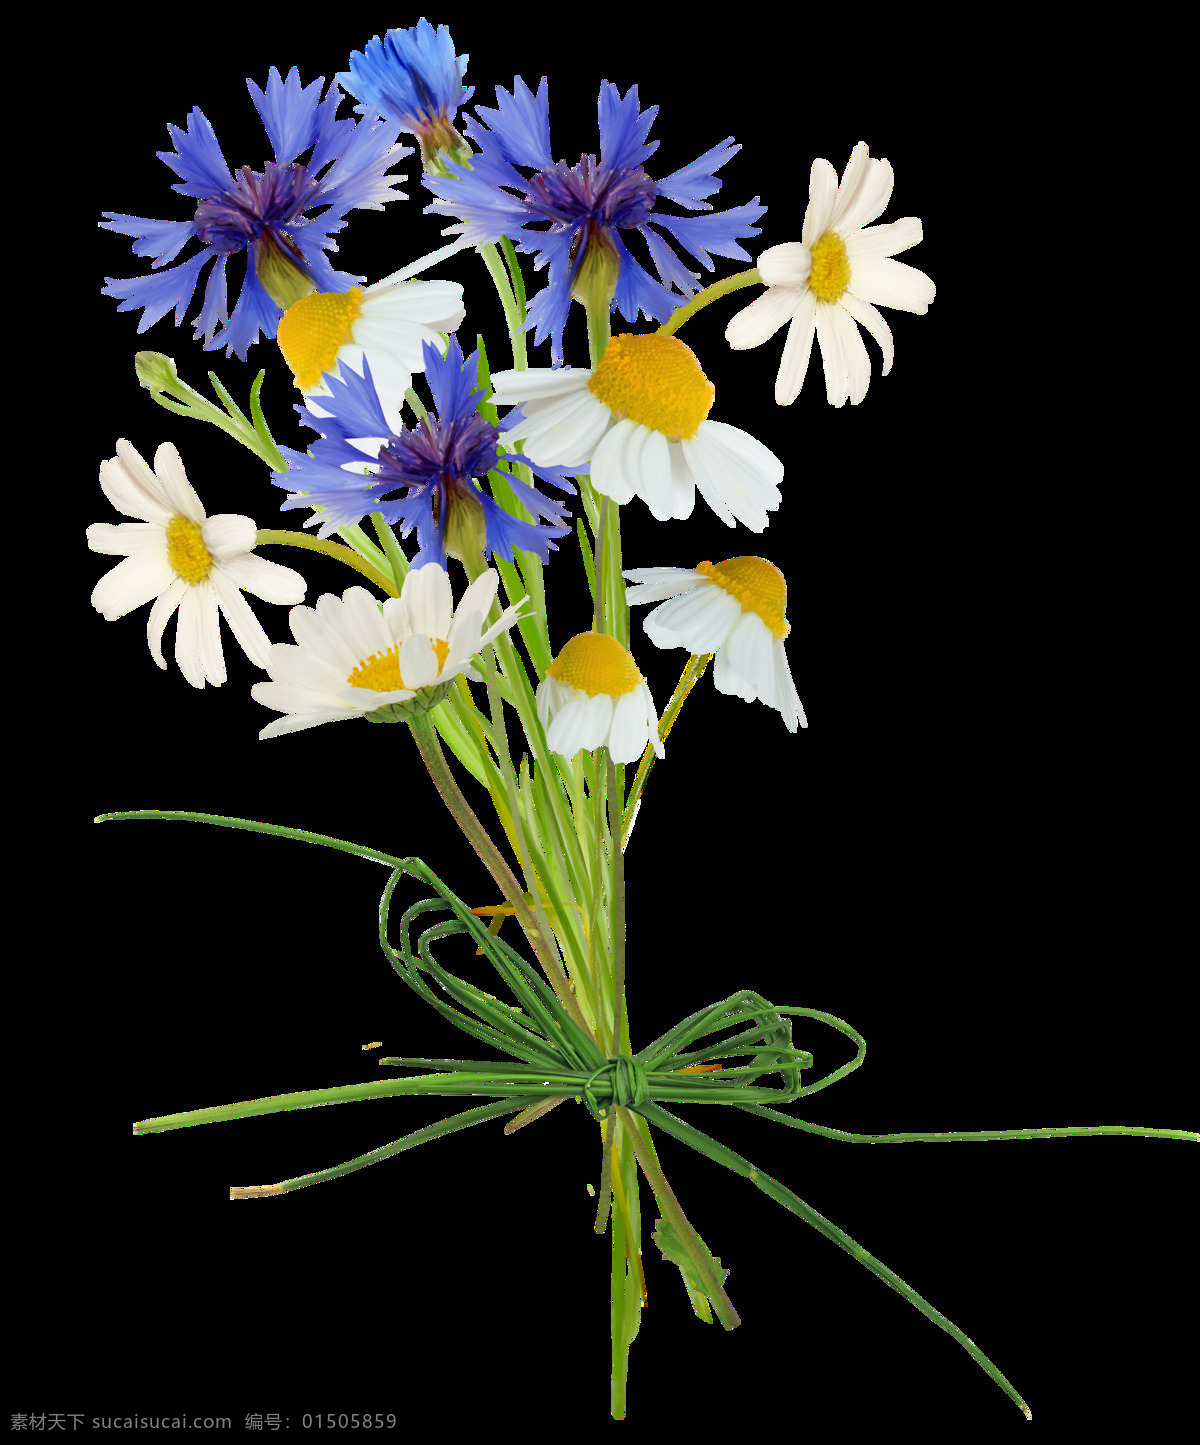 清新 感 现代 唯美 花束 透明 紫色 白色 菊花 花草 透明素材 免扣素材 装饰图片